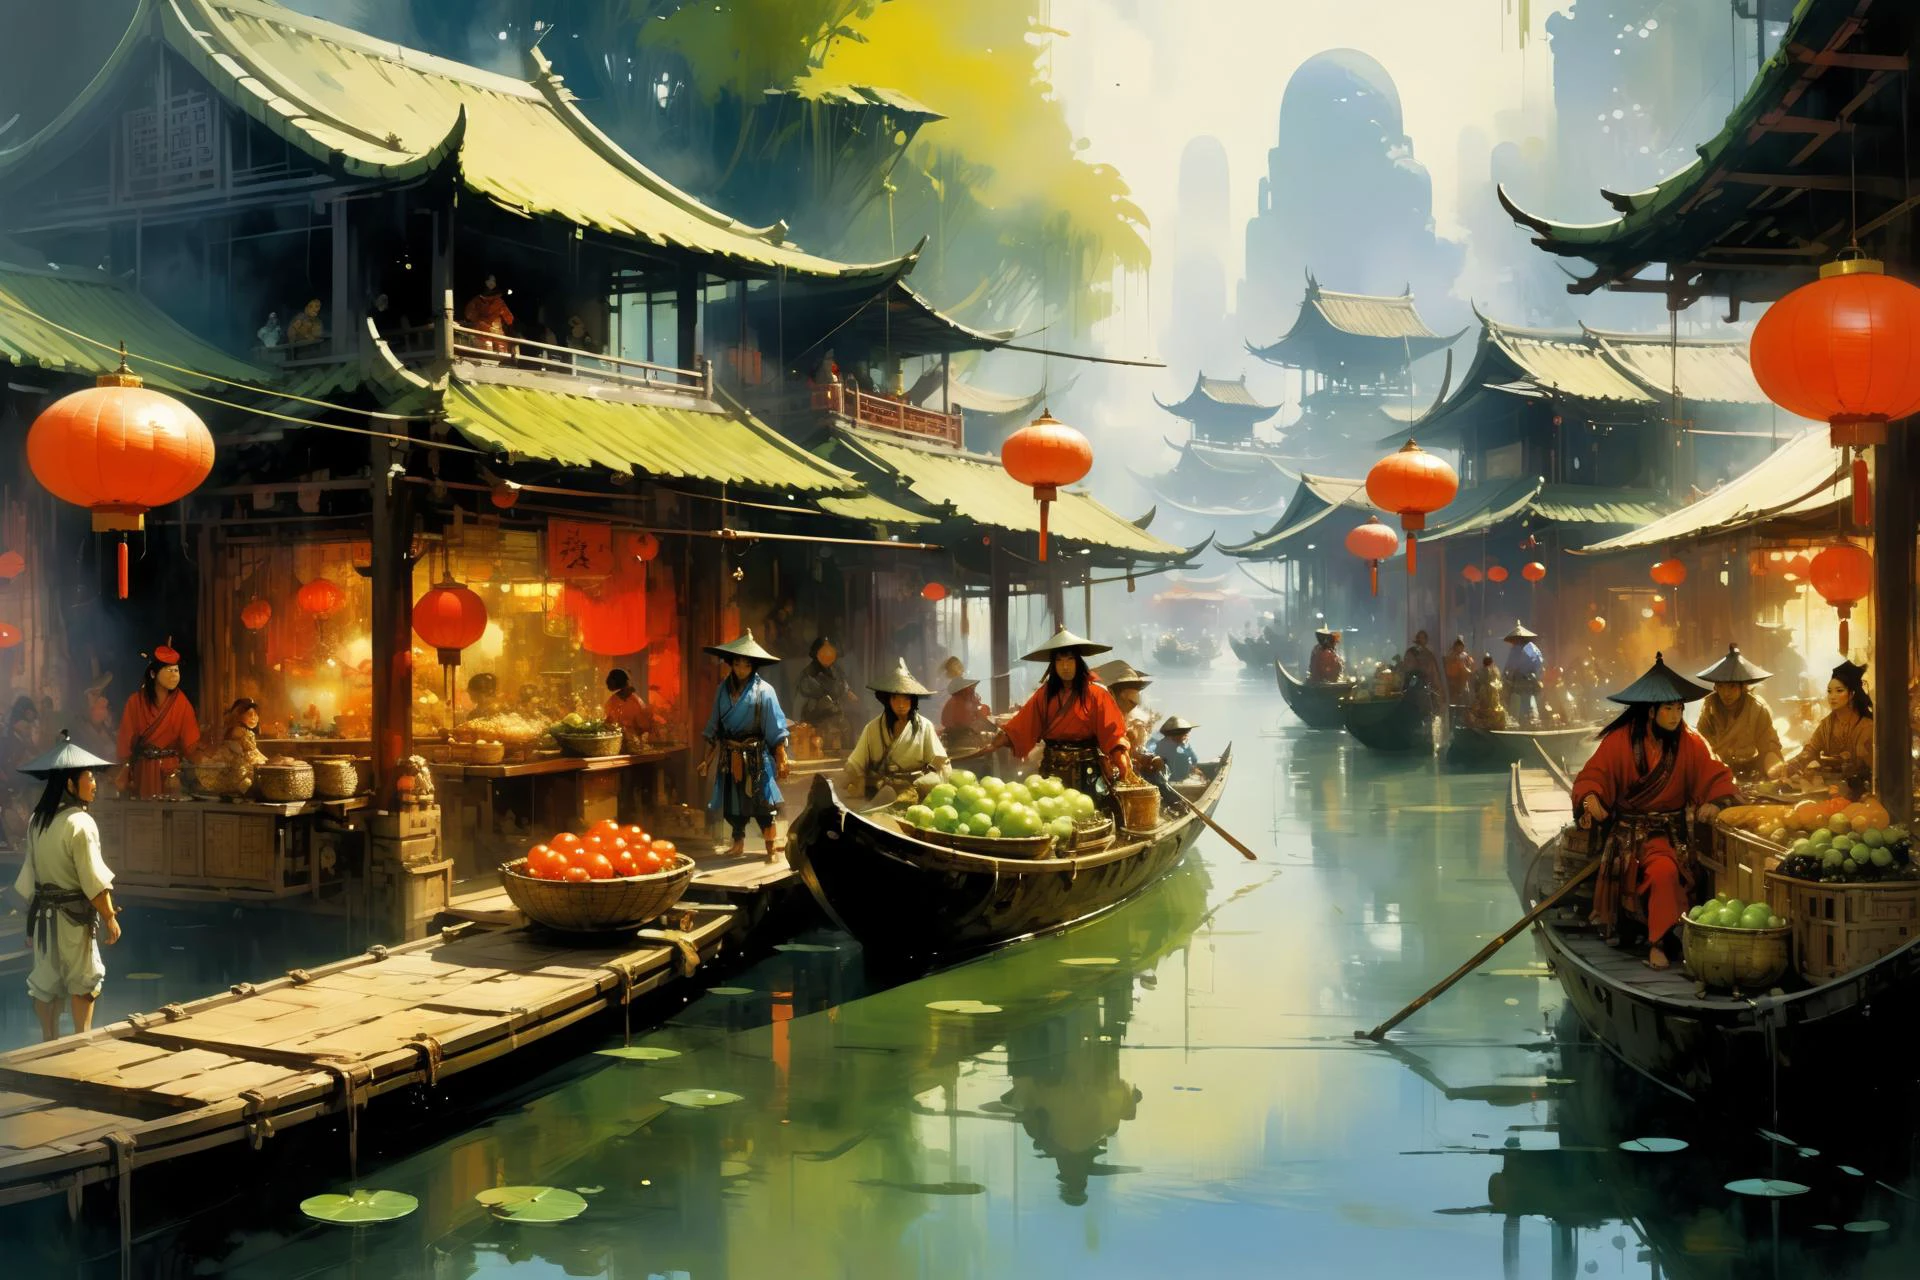 السوق الصيني العائم, (خيالي:1.2),  صفحة جون بيركي ستايل, مشهد لعبة 2D, الرسم الزيتي والألوان المائية,, (تحفة:1.2), أفضل جودة